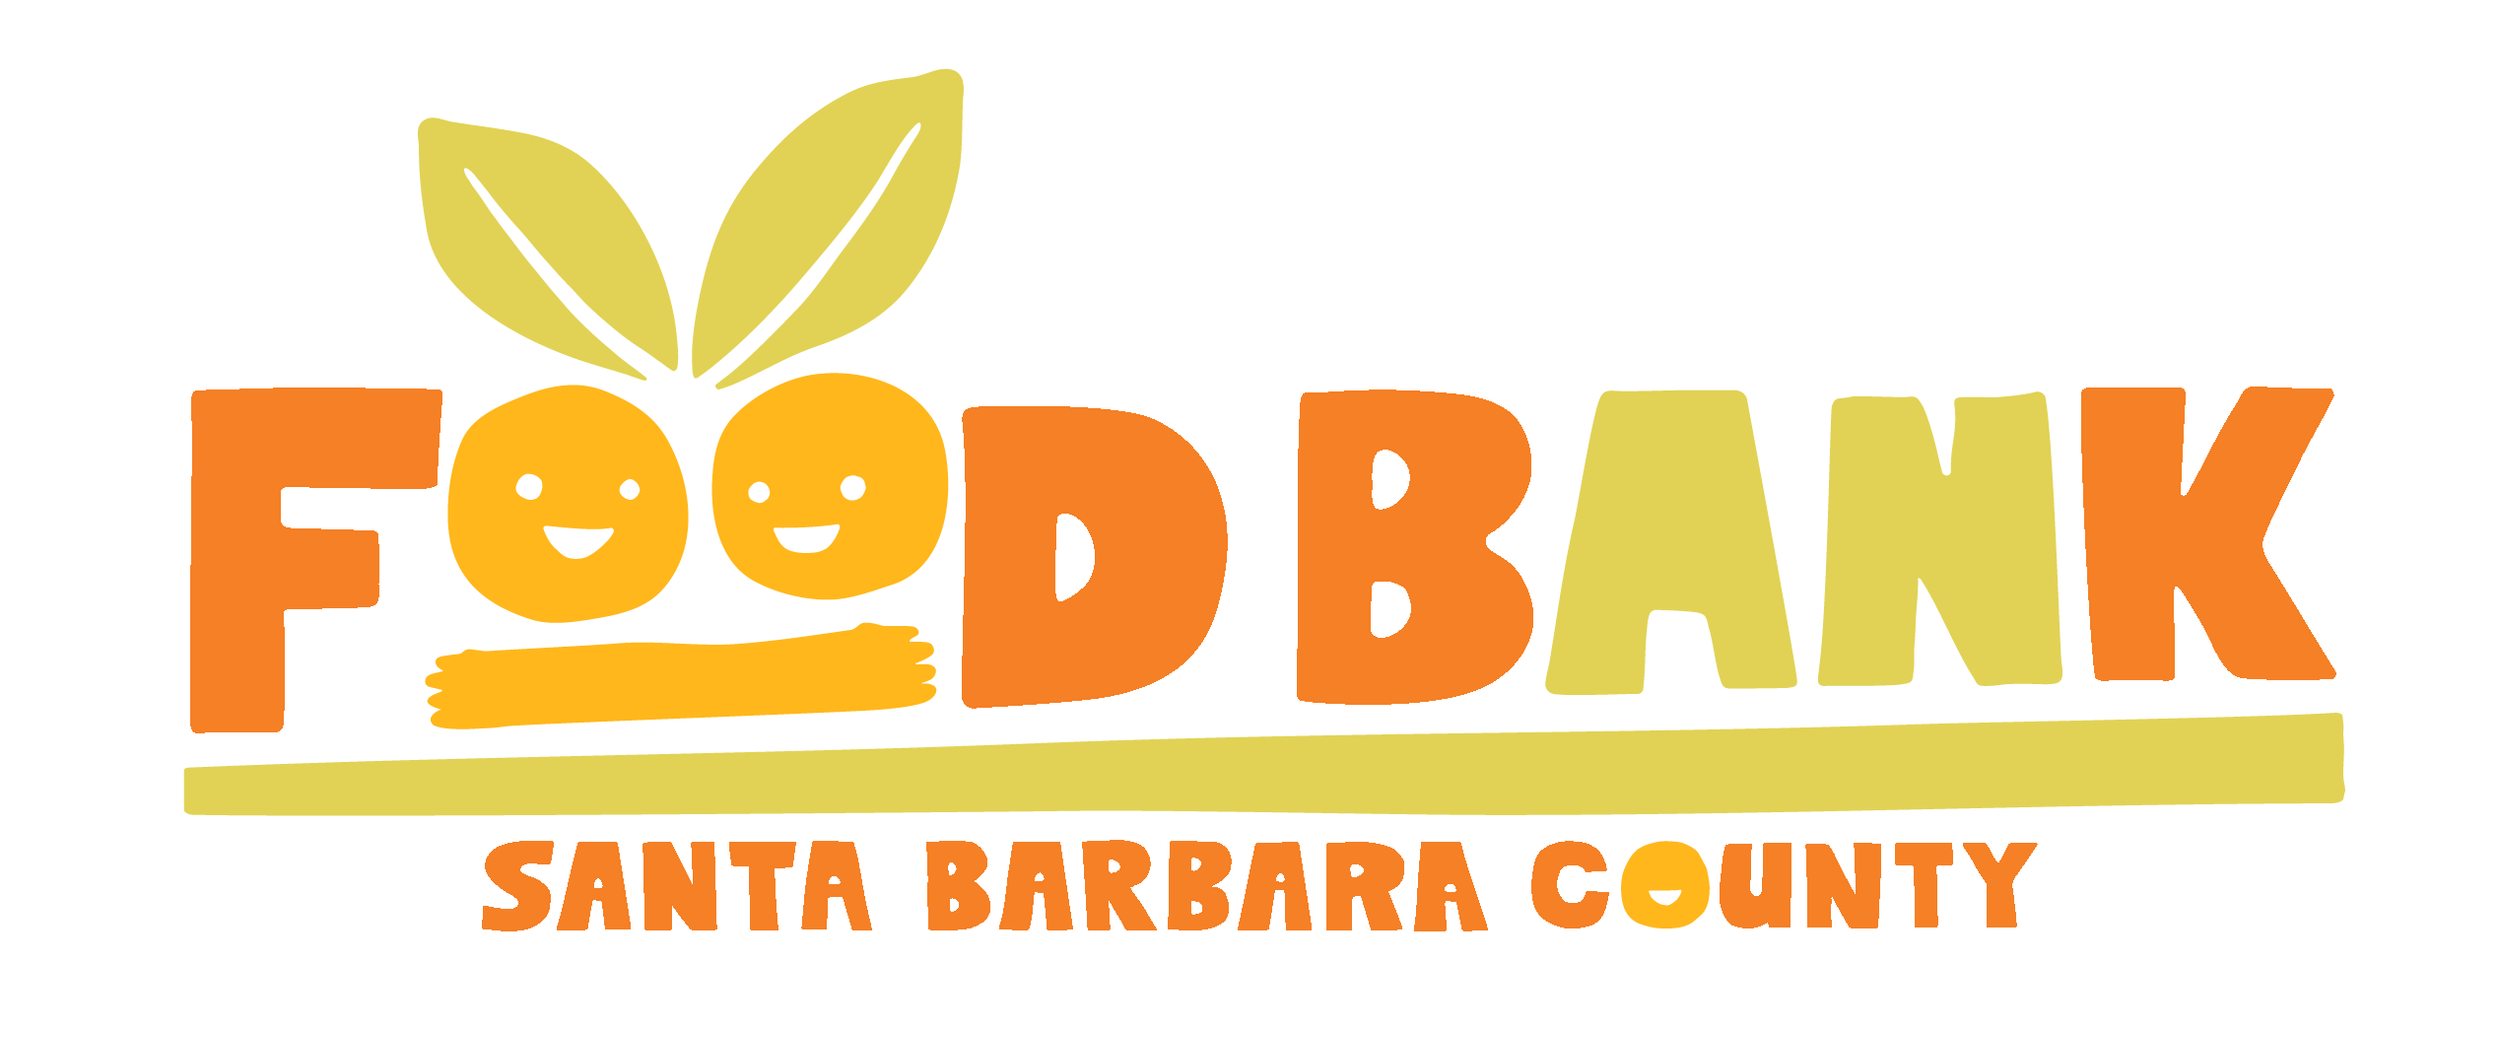 Foodbank of Santa Barbara County